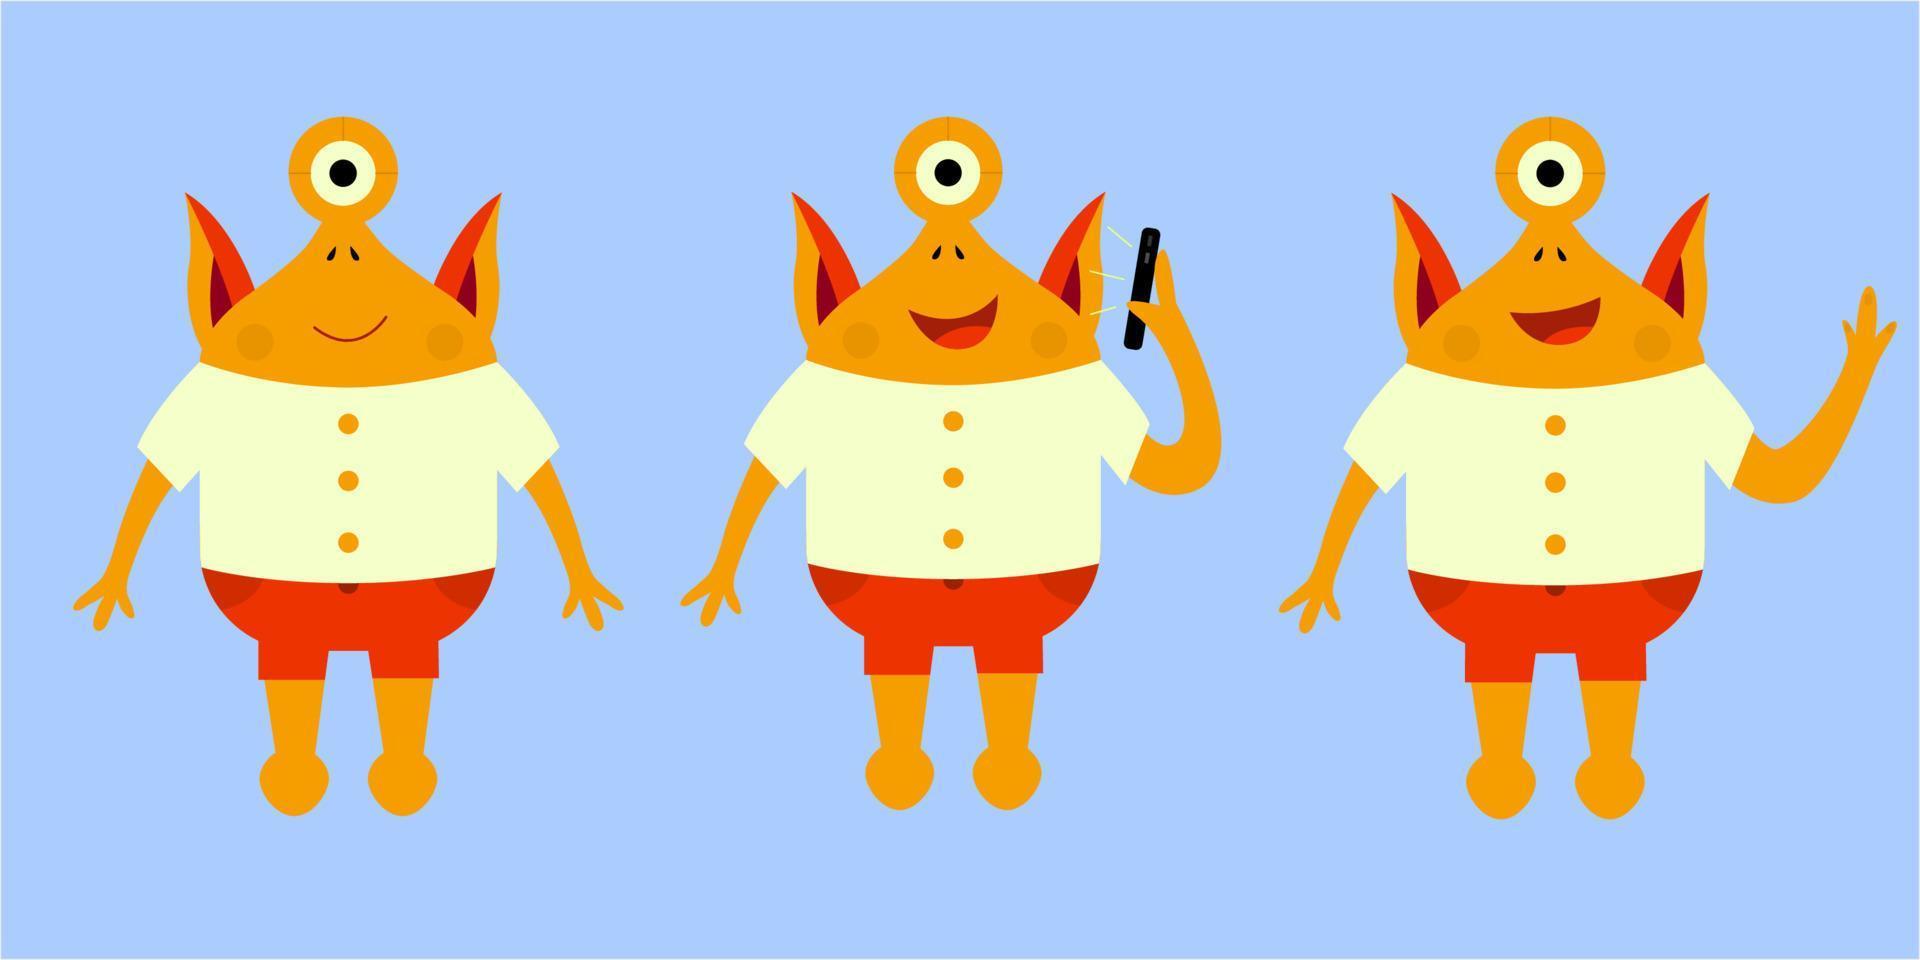 schattig monster in verschillende poses. gele baby schepsel. karakterillustratie voor kinderen in een platte cartoonstijl vector